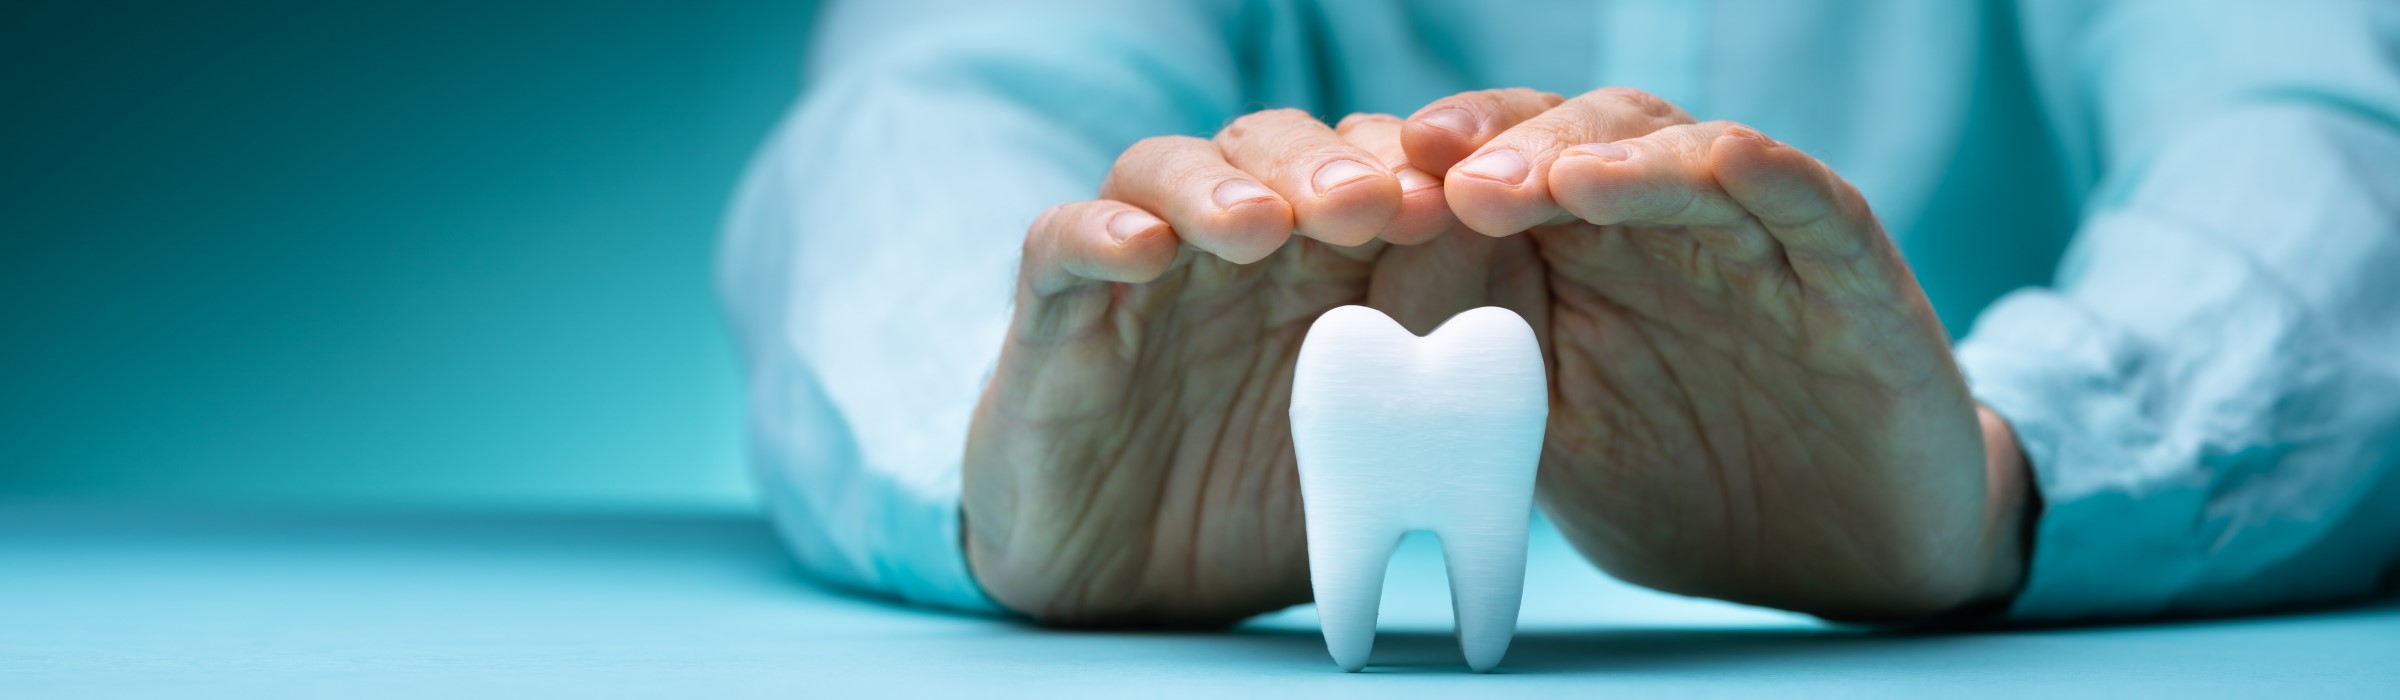 Zahnzusatzversicherung: Für wen lohnt sie sich?